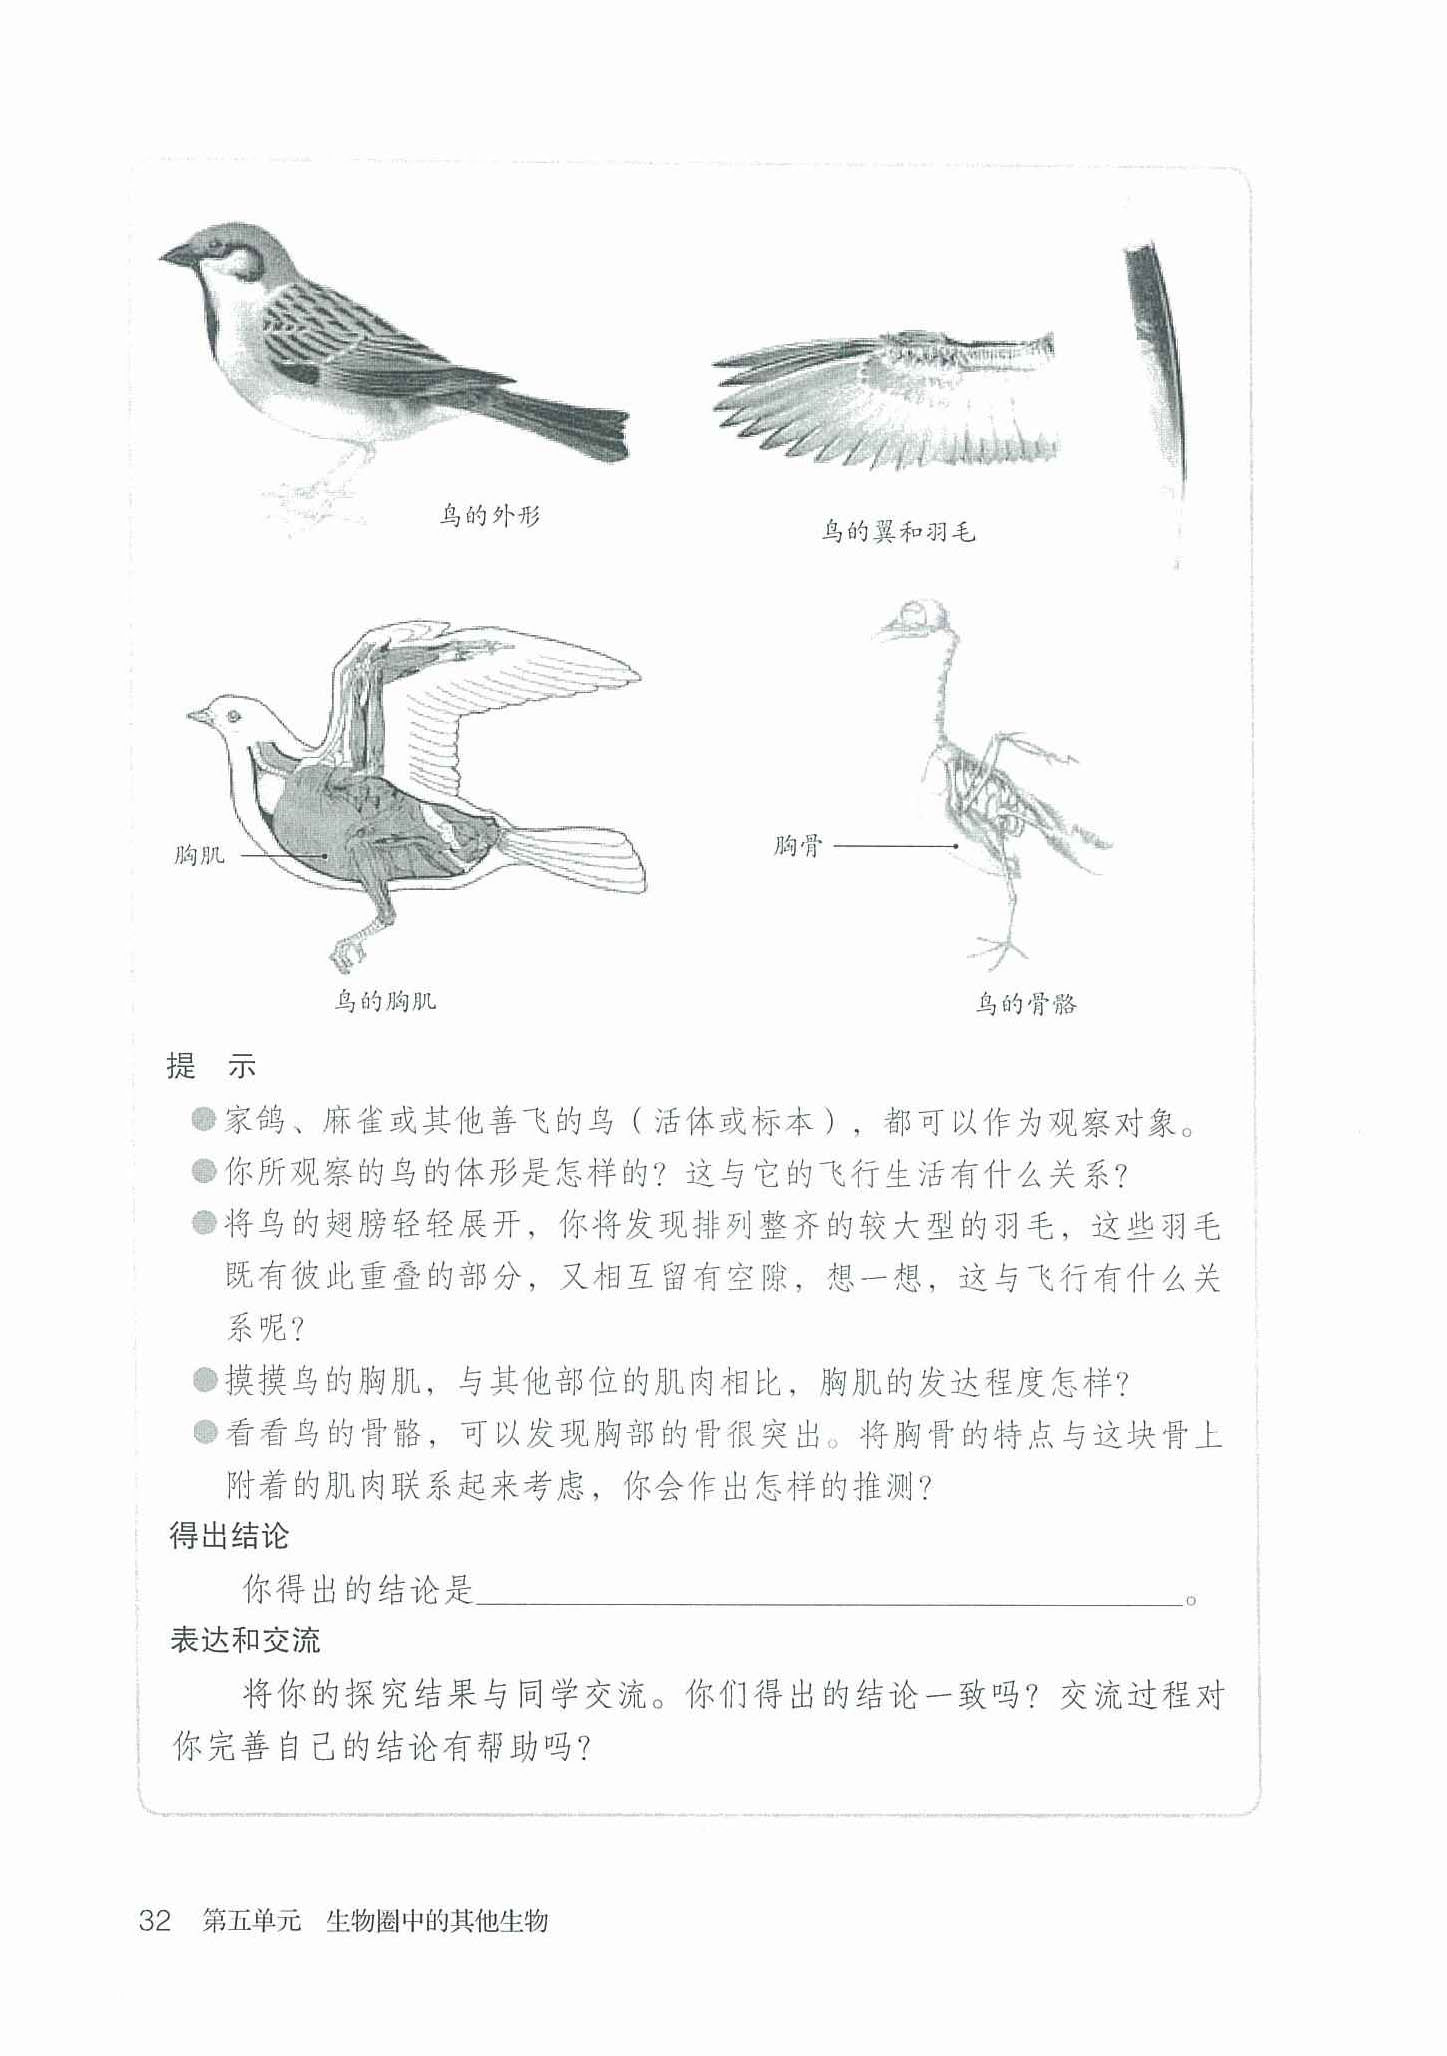 鸟适于飞行的形态结构特点